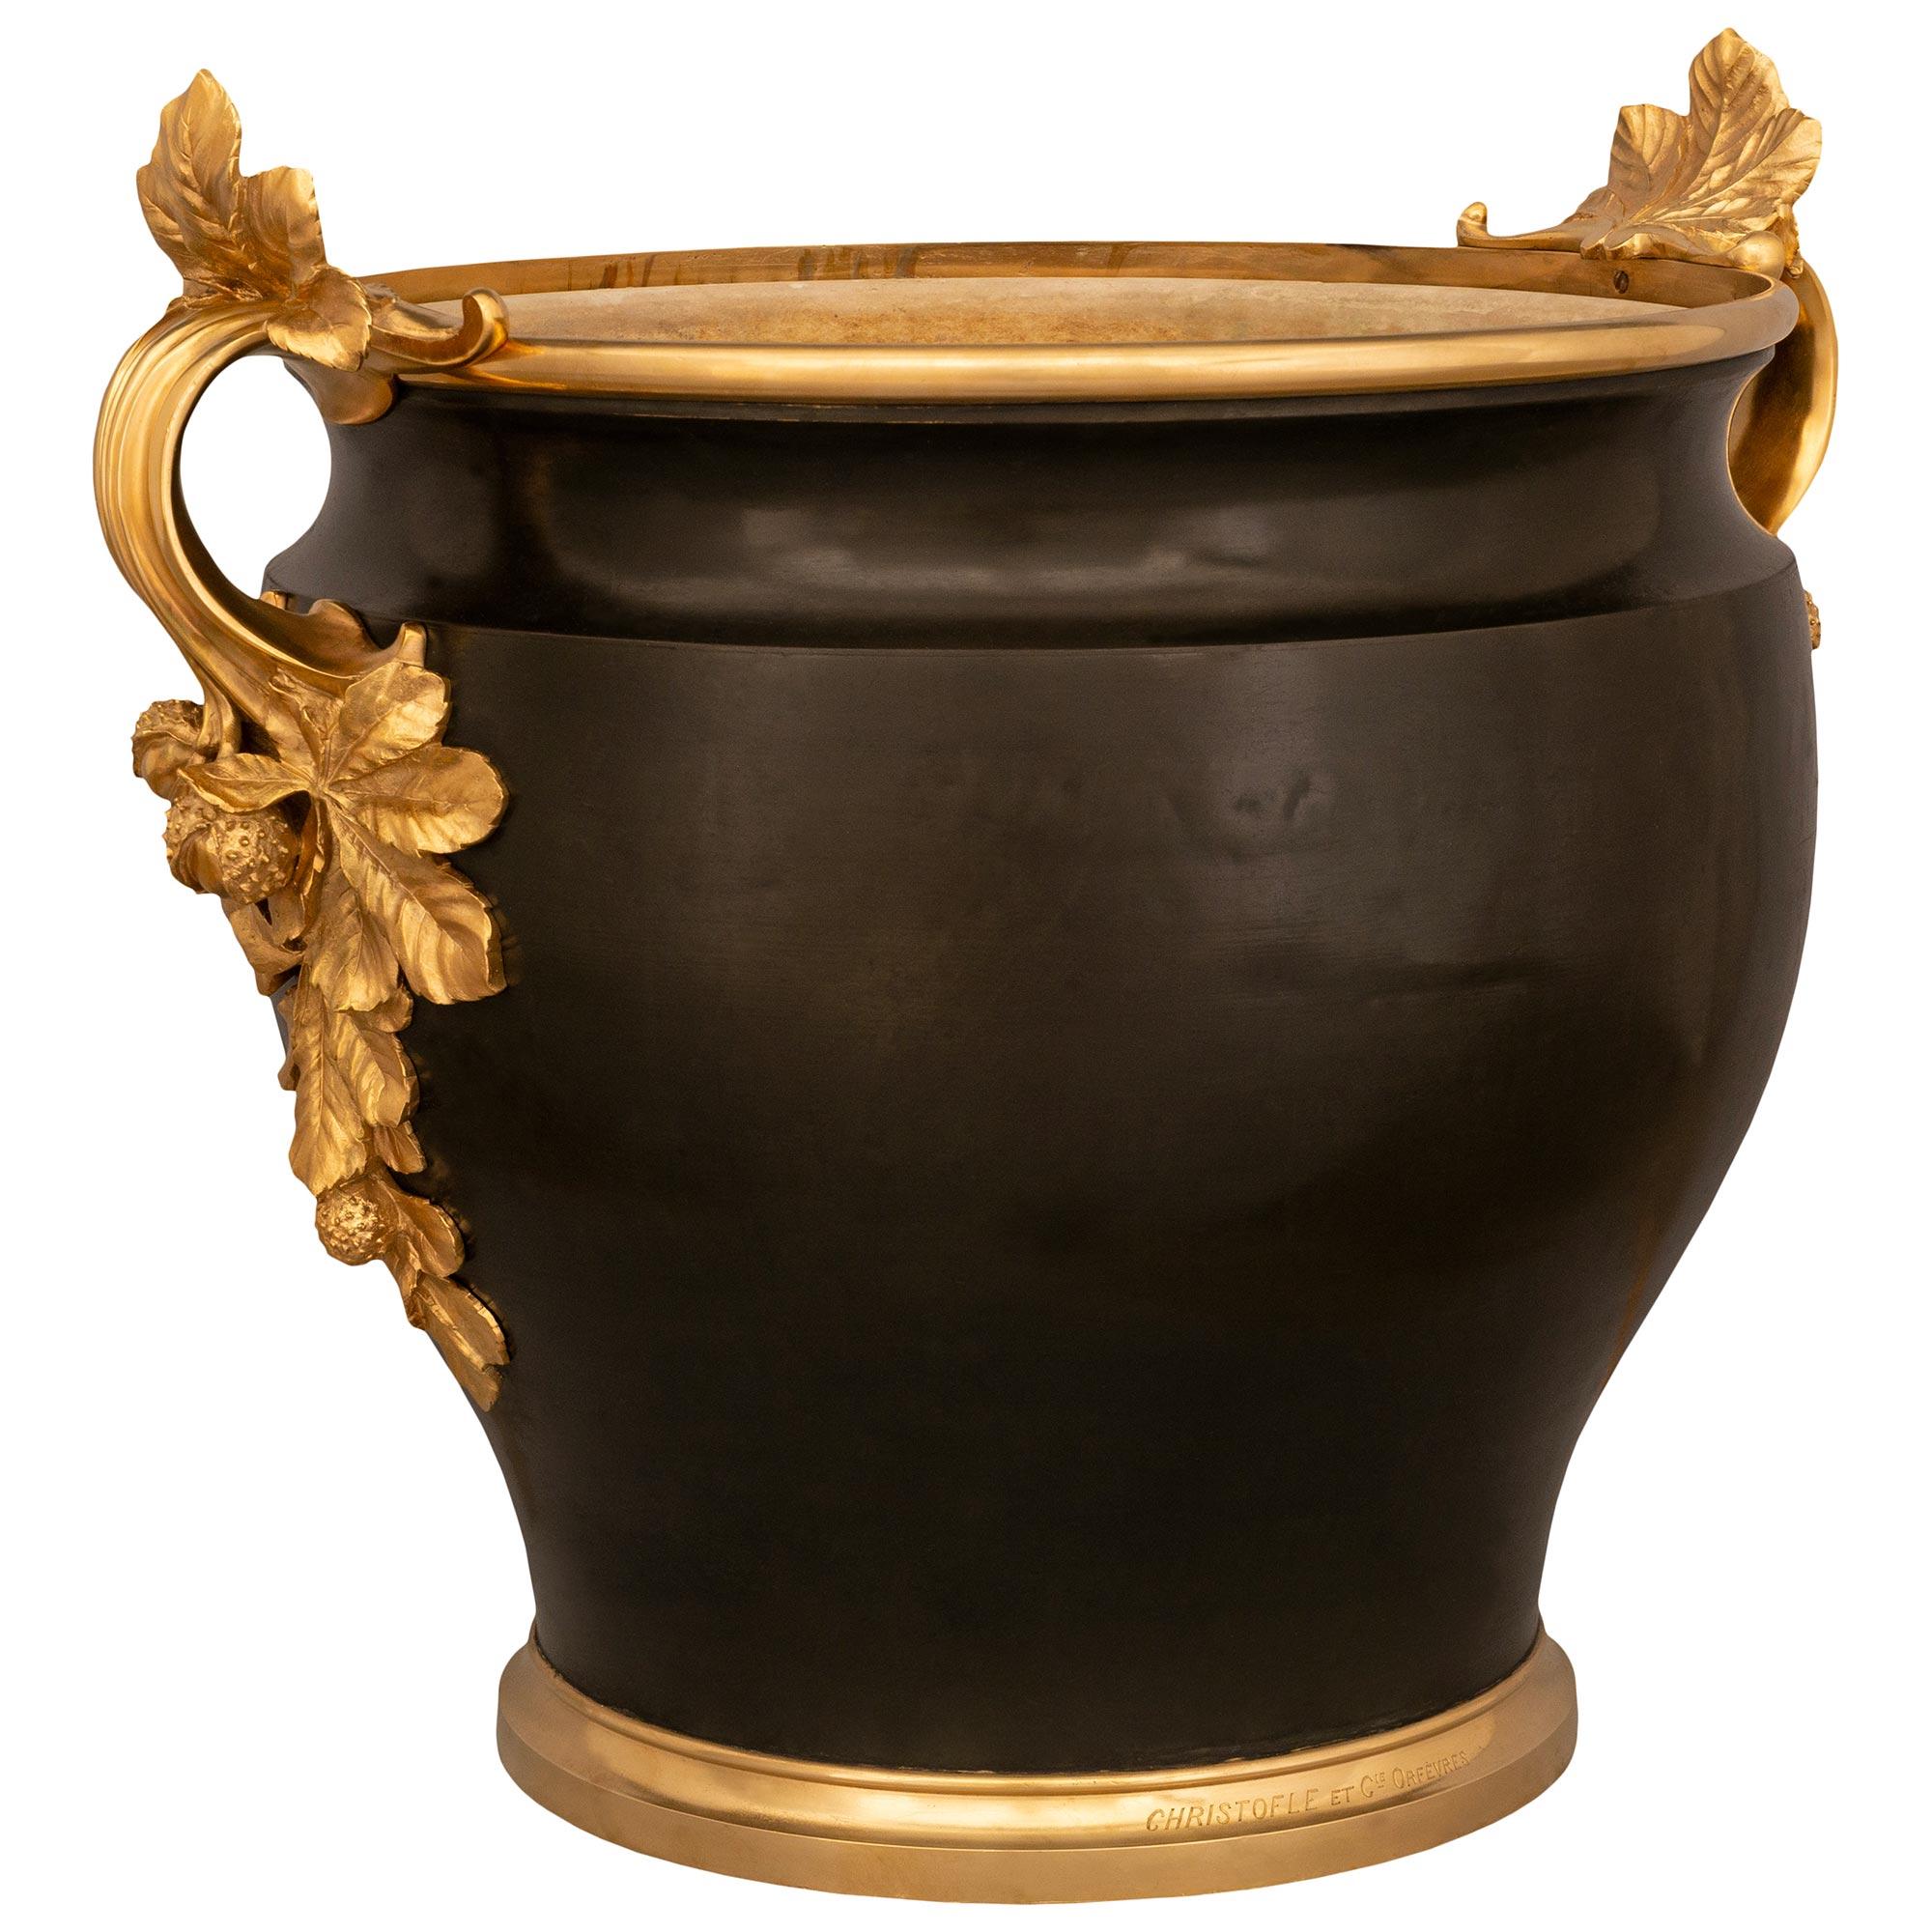 Eine sehr beeindruckende und große Französisch 19. Jahrhundert Louis XVI st. Ormolu und patiniert Bronze Jardinière Vase signiert Christofle et Cie Orfevres. Diese einzigartige Jardiniere steht auf einem runden Ormolu-Sockel mit fein gesprenkeltem